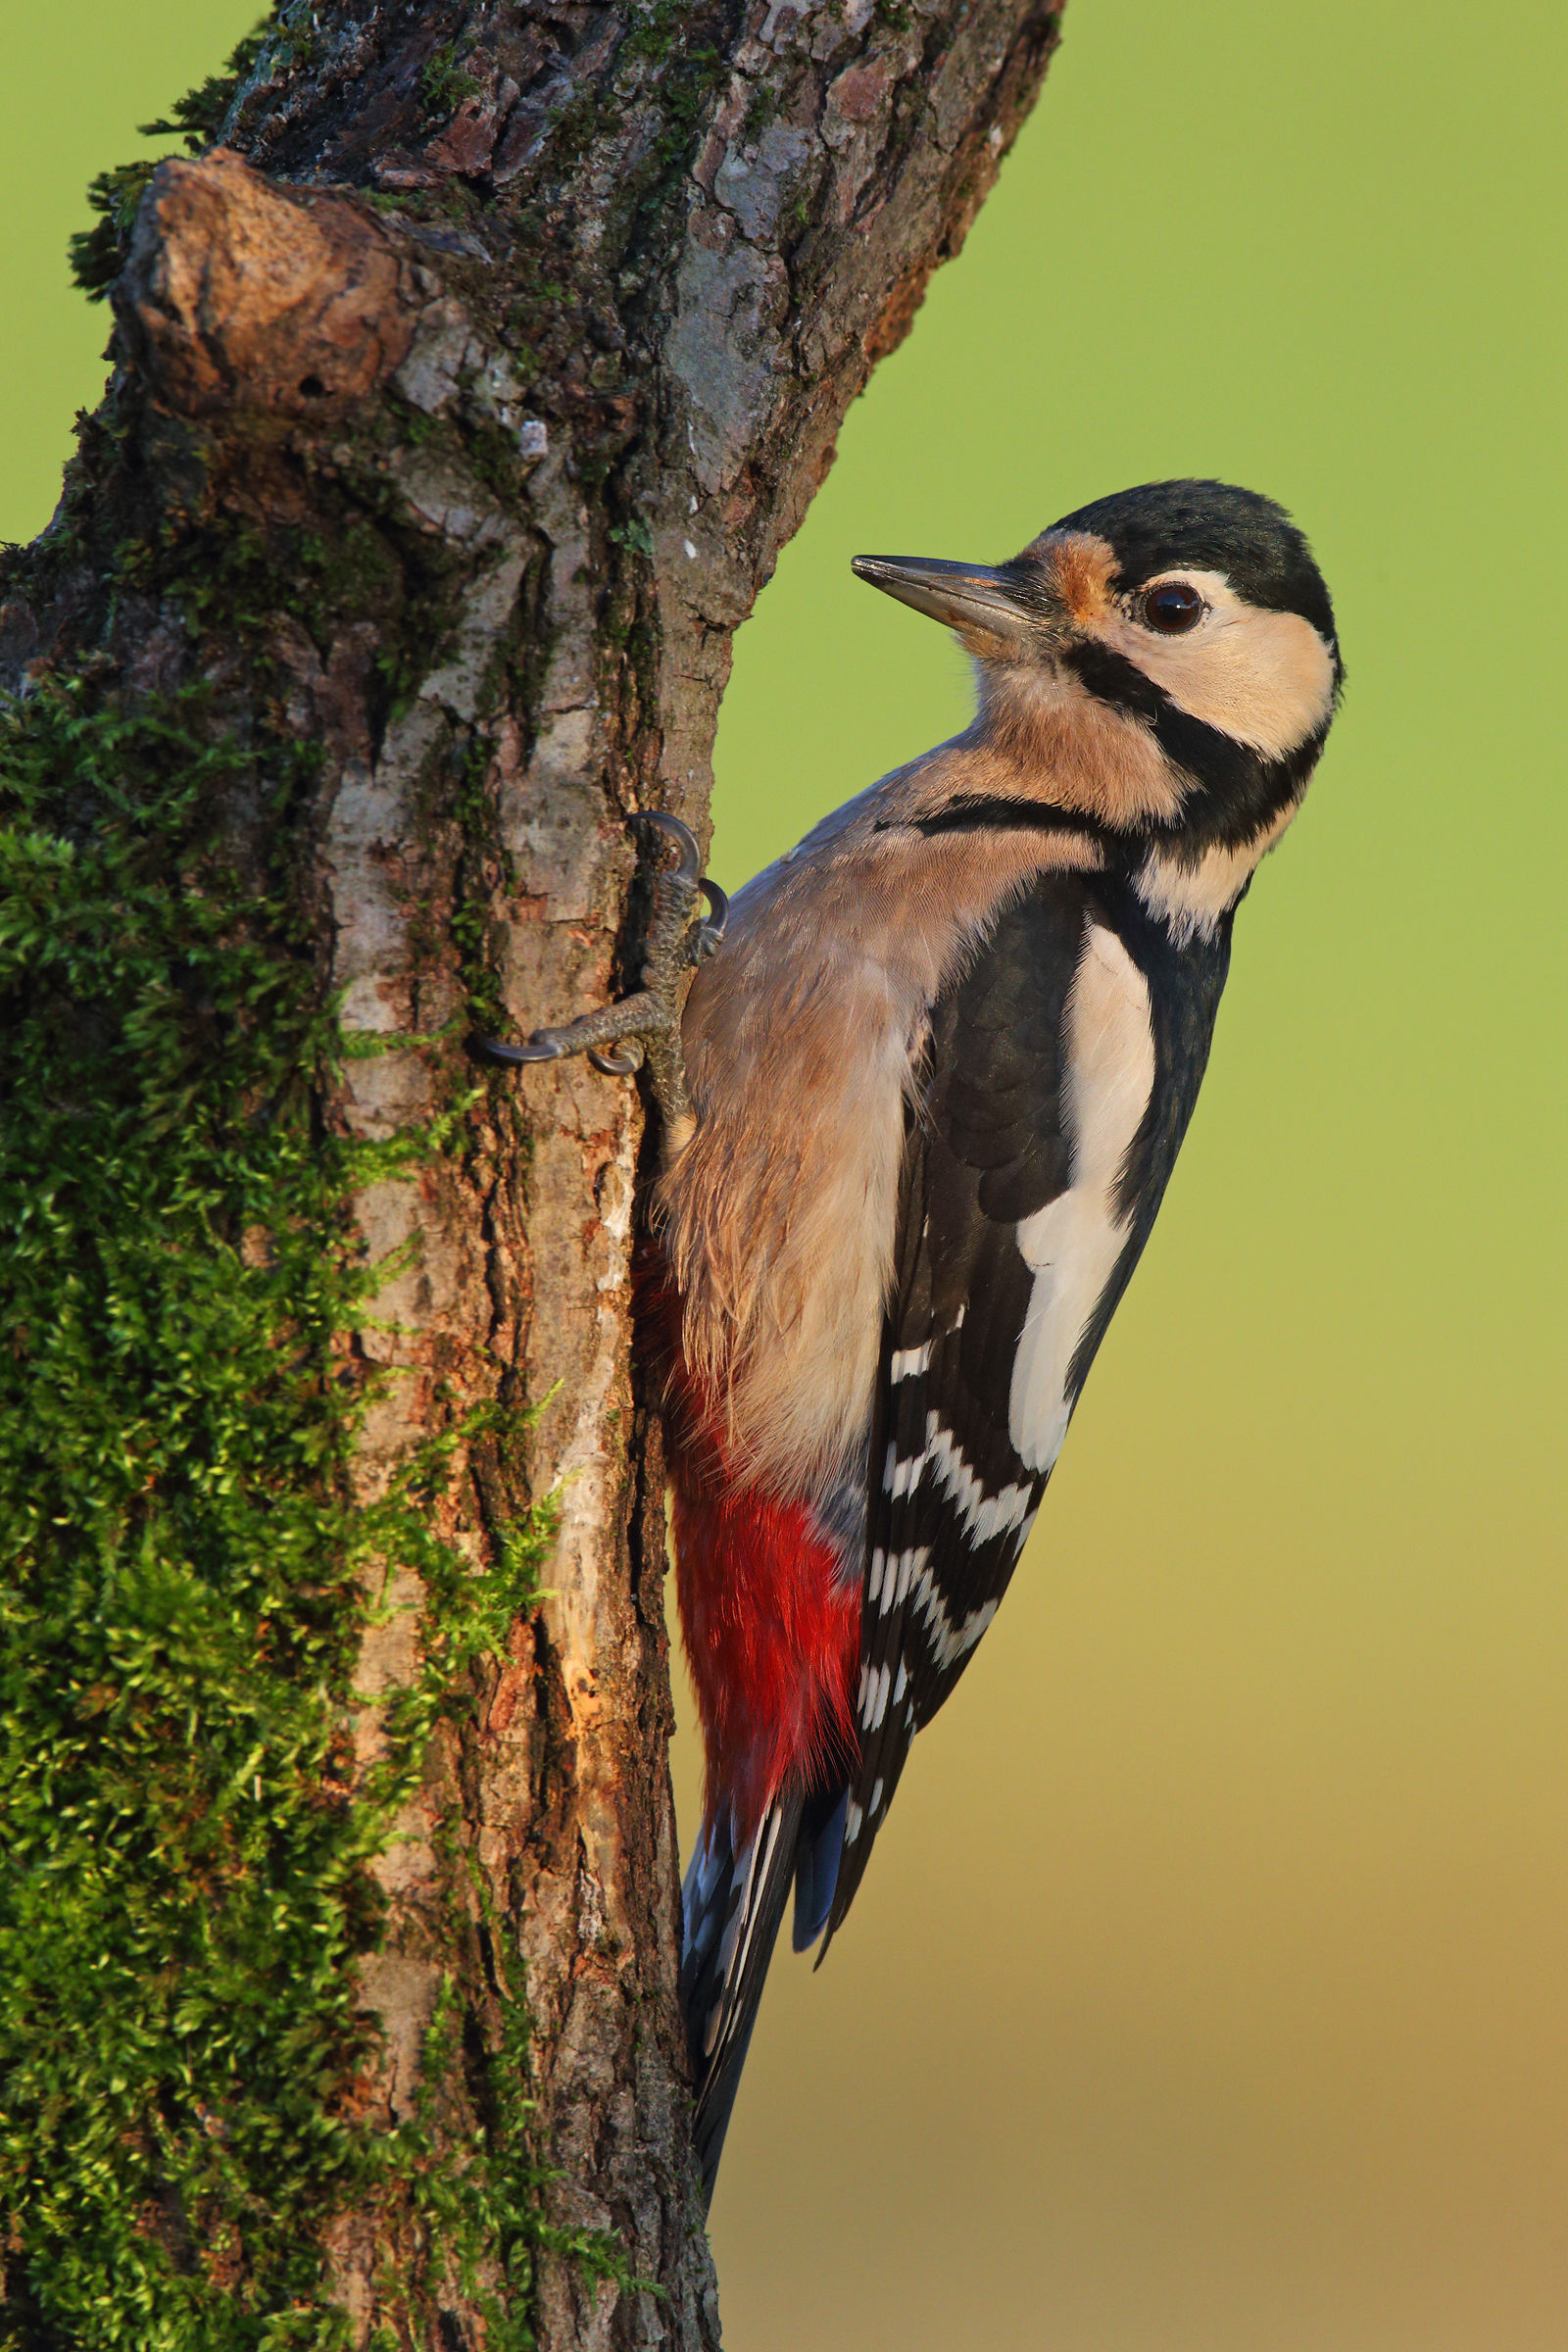 Female woodpecker dawn...